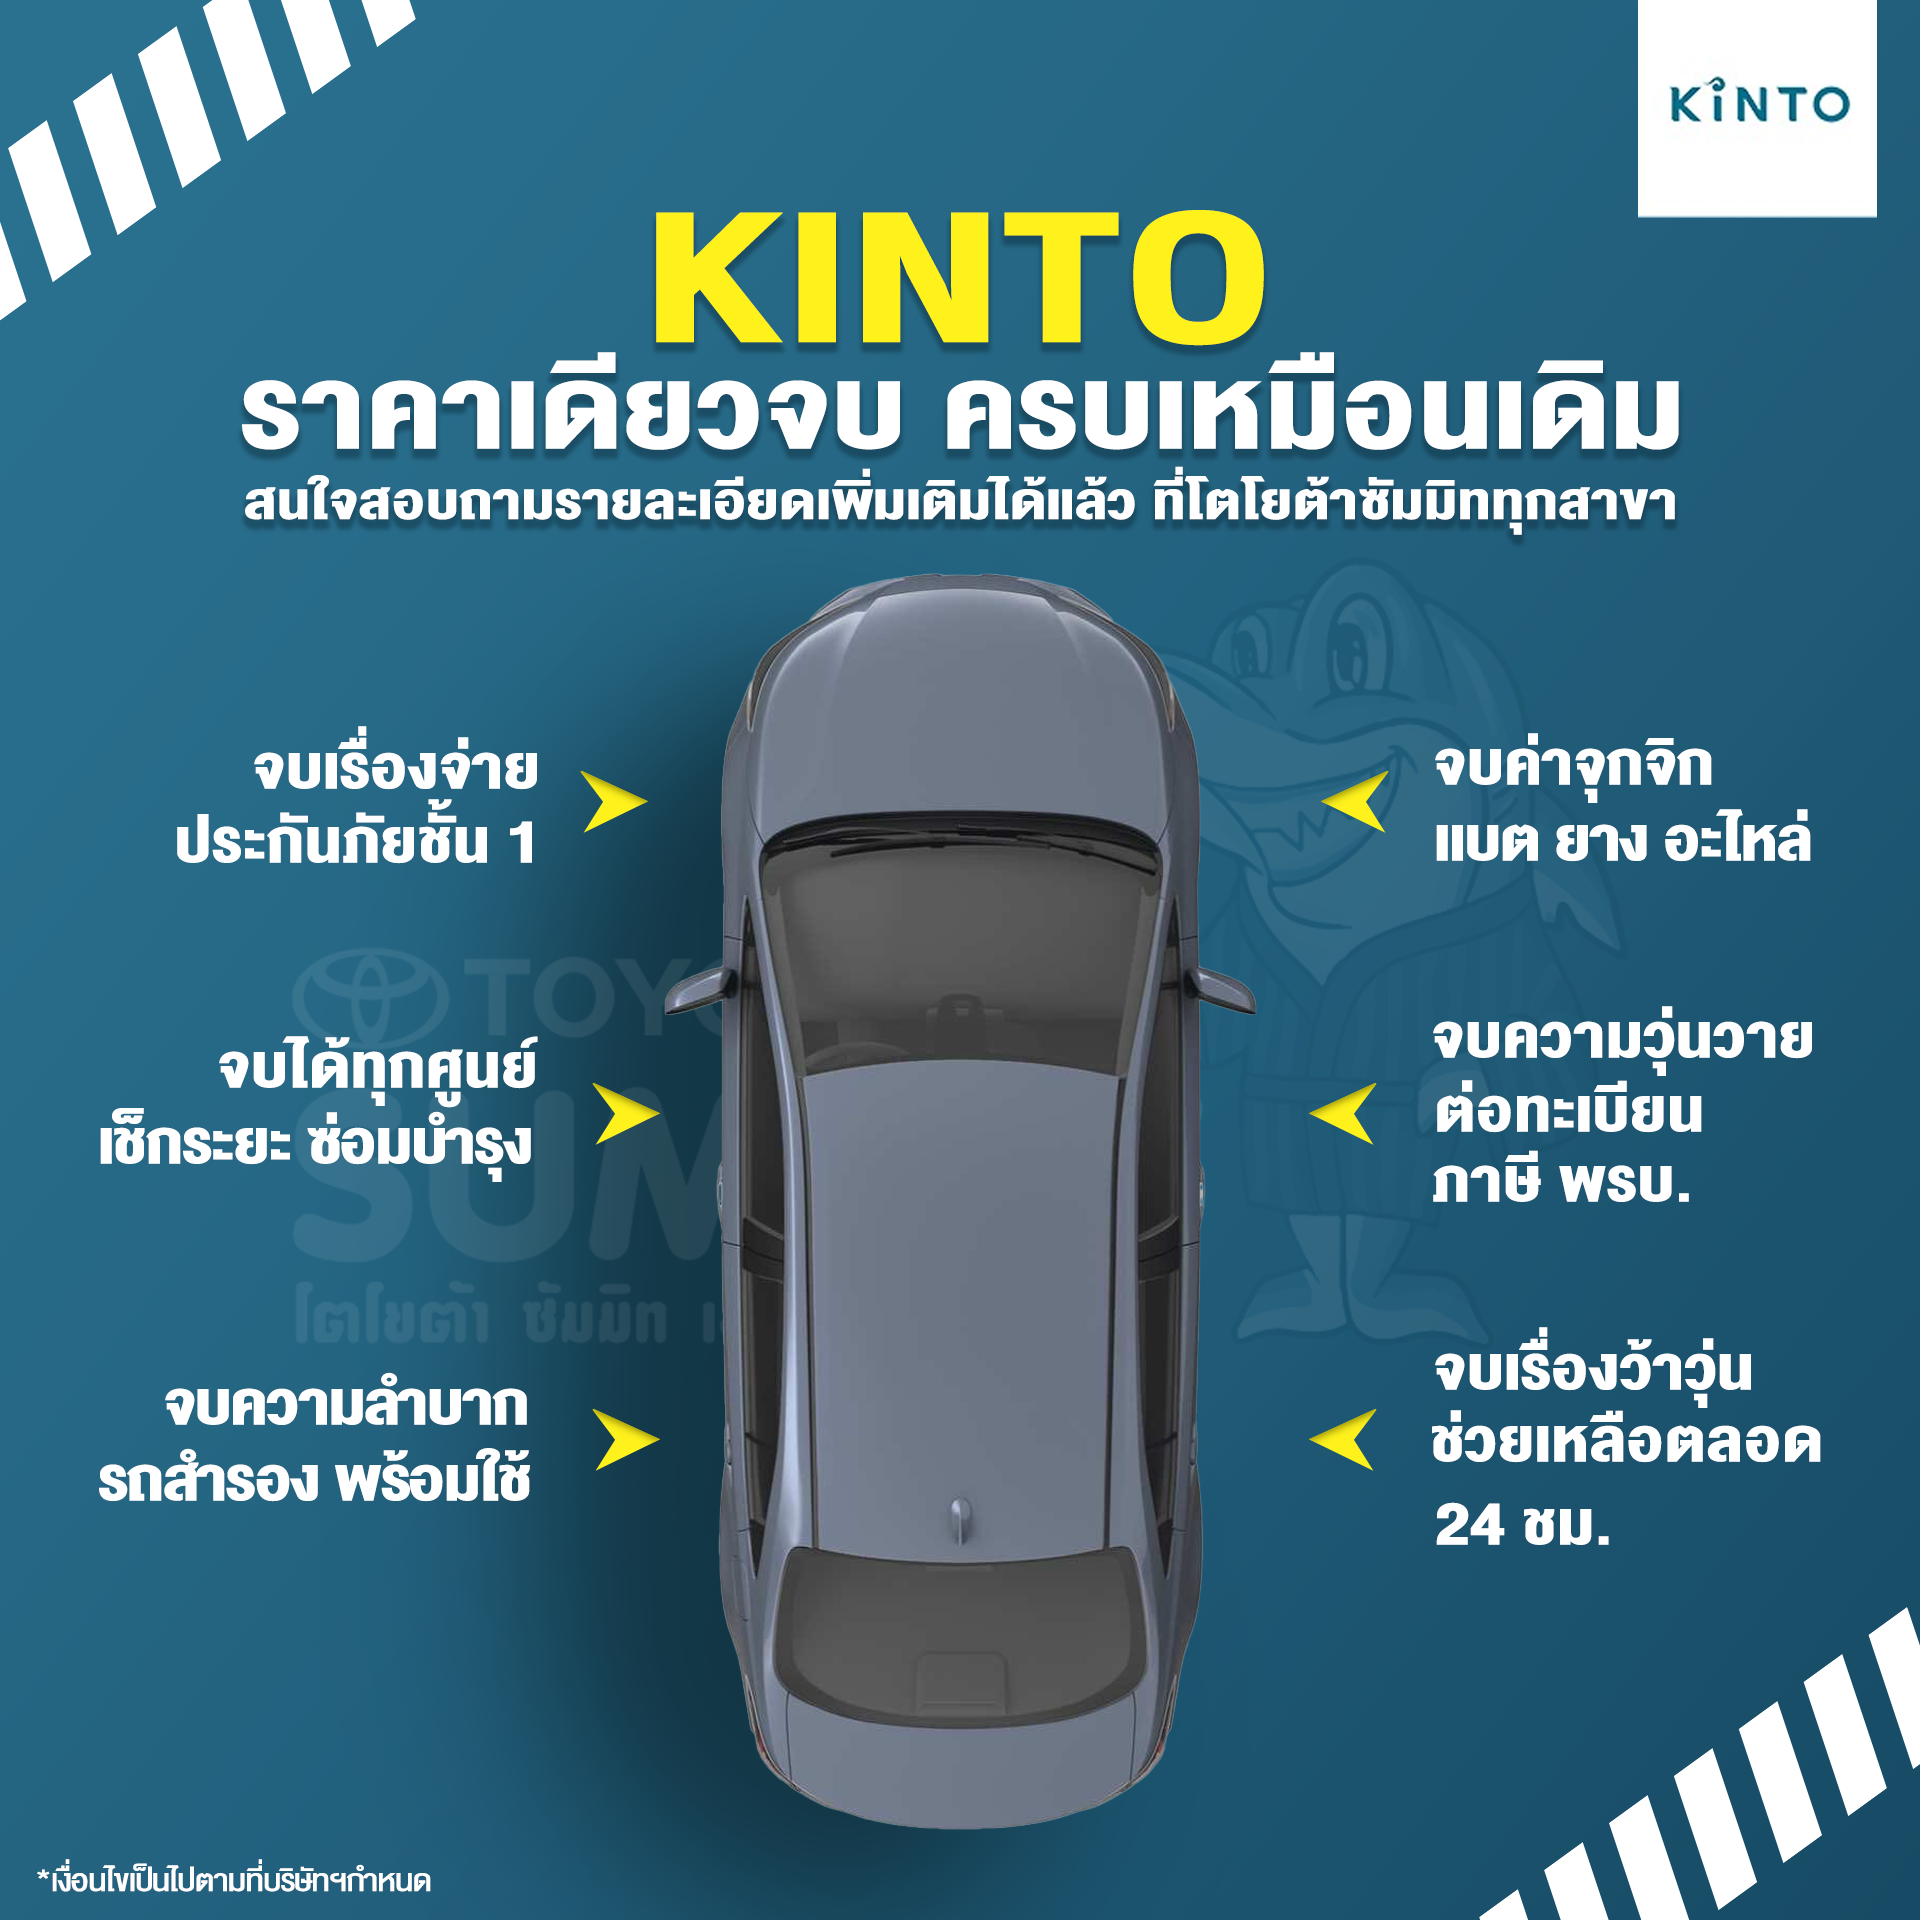 เช่ารถกับ KINTO จบครบเหมือนเดิม